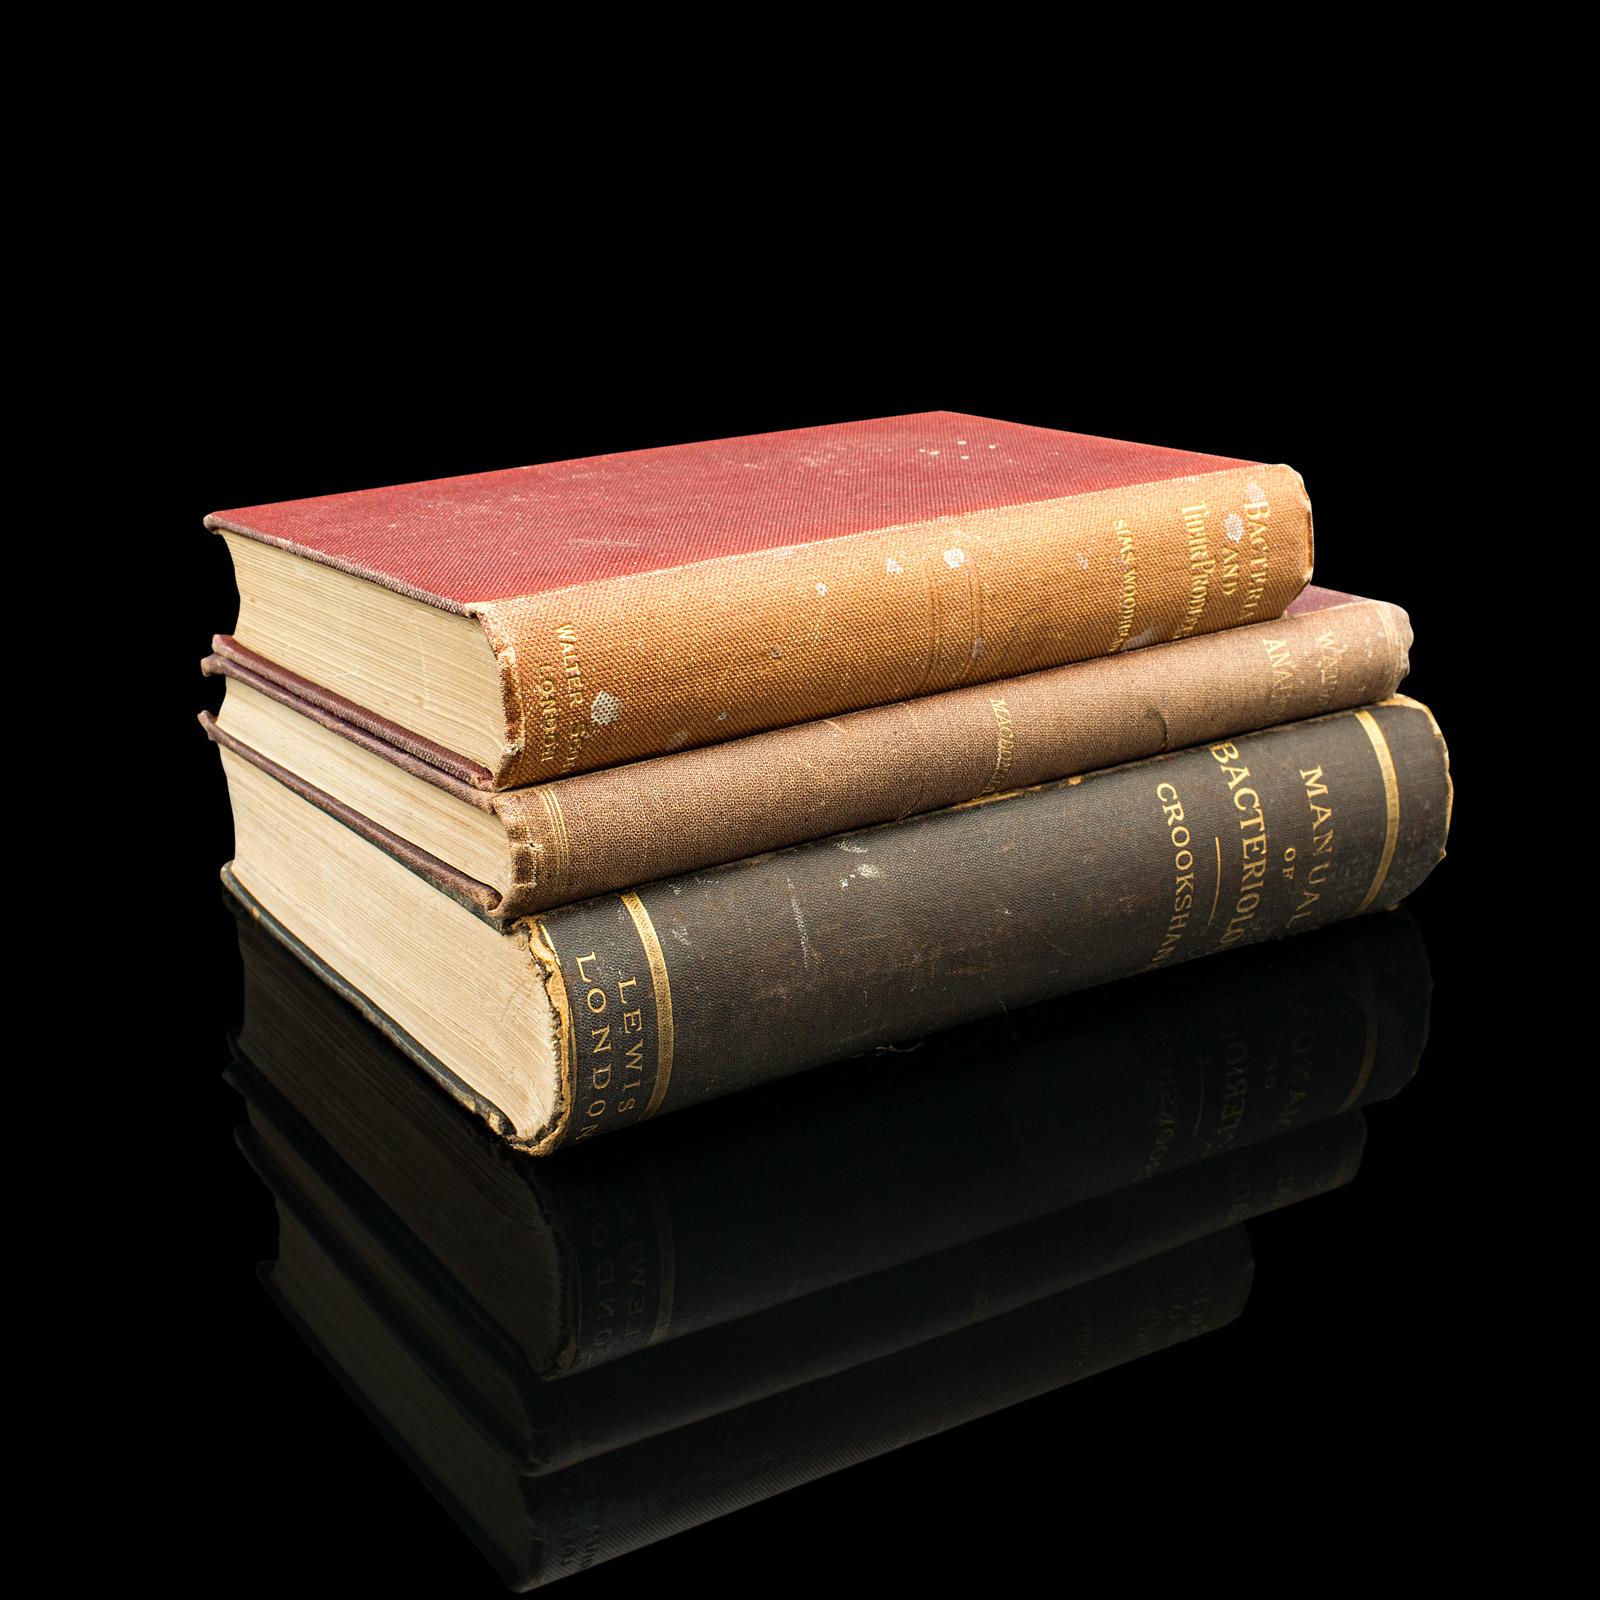 Il s'agit d'un ensemble de 3 livres anciens sur la biologie. Publié en anglais, chaque ouvrage est un titre de référence scientifique relié, datant de la fin de la période victorienne.

Comprenant : Manual of Bacteriology par Edgar M. Crookshank